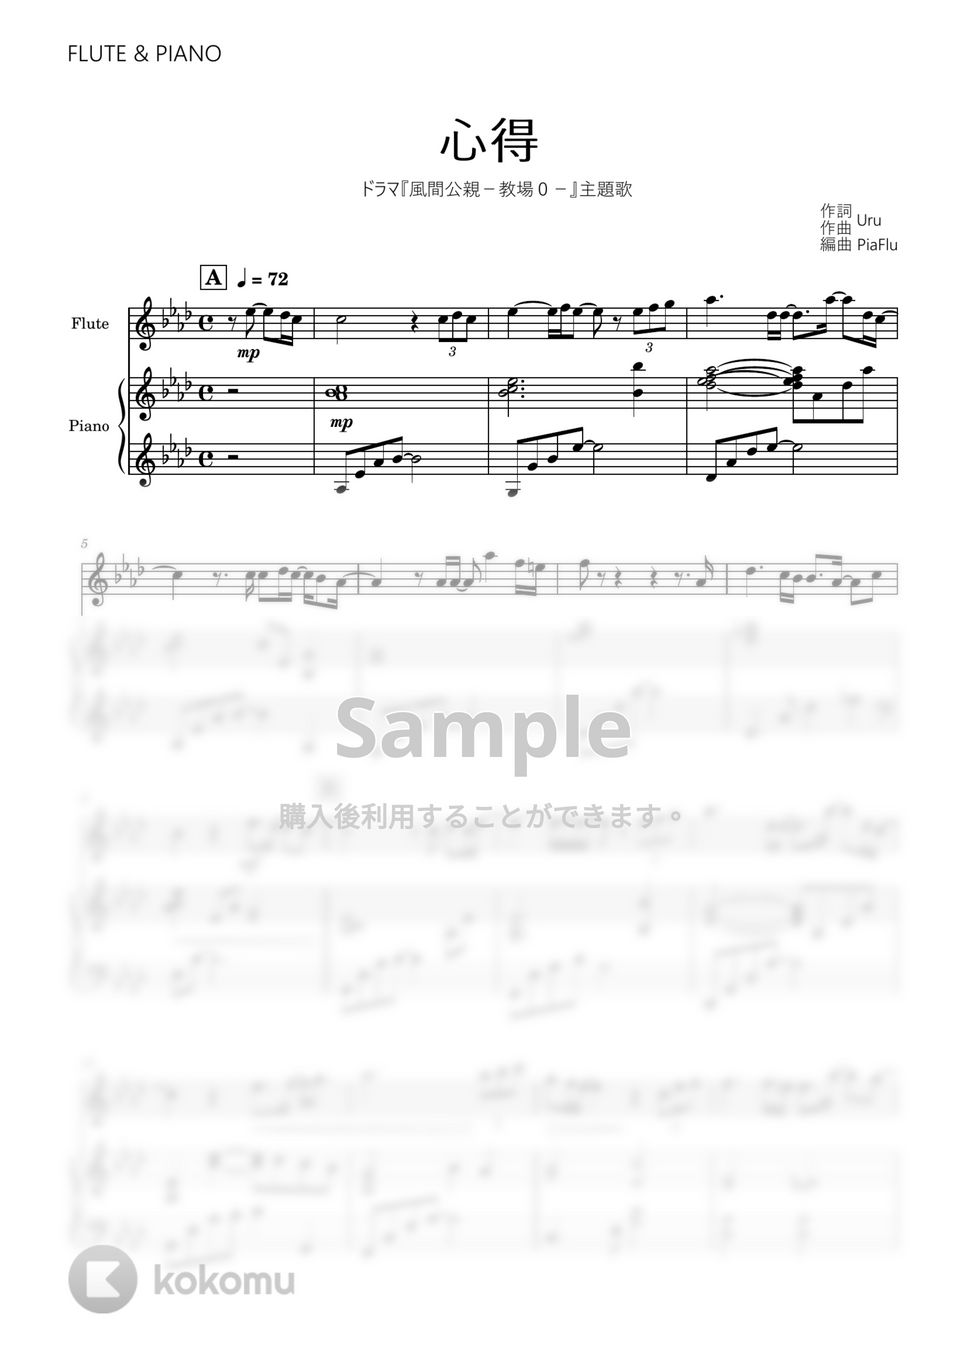 Uru - 心得 (フルート&ピアノ伴奏) by PiaFlu